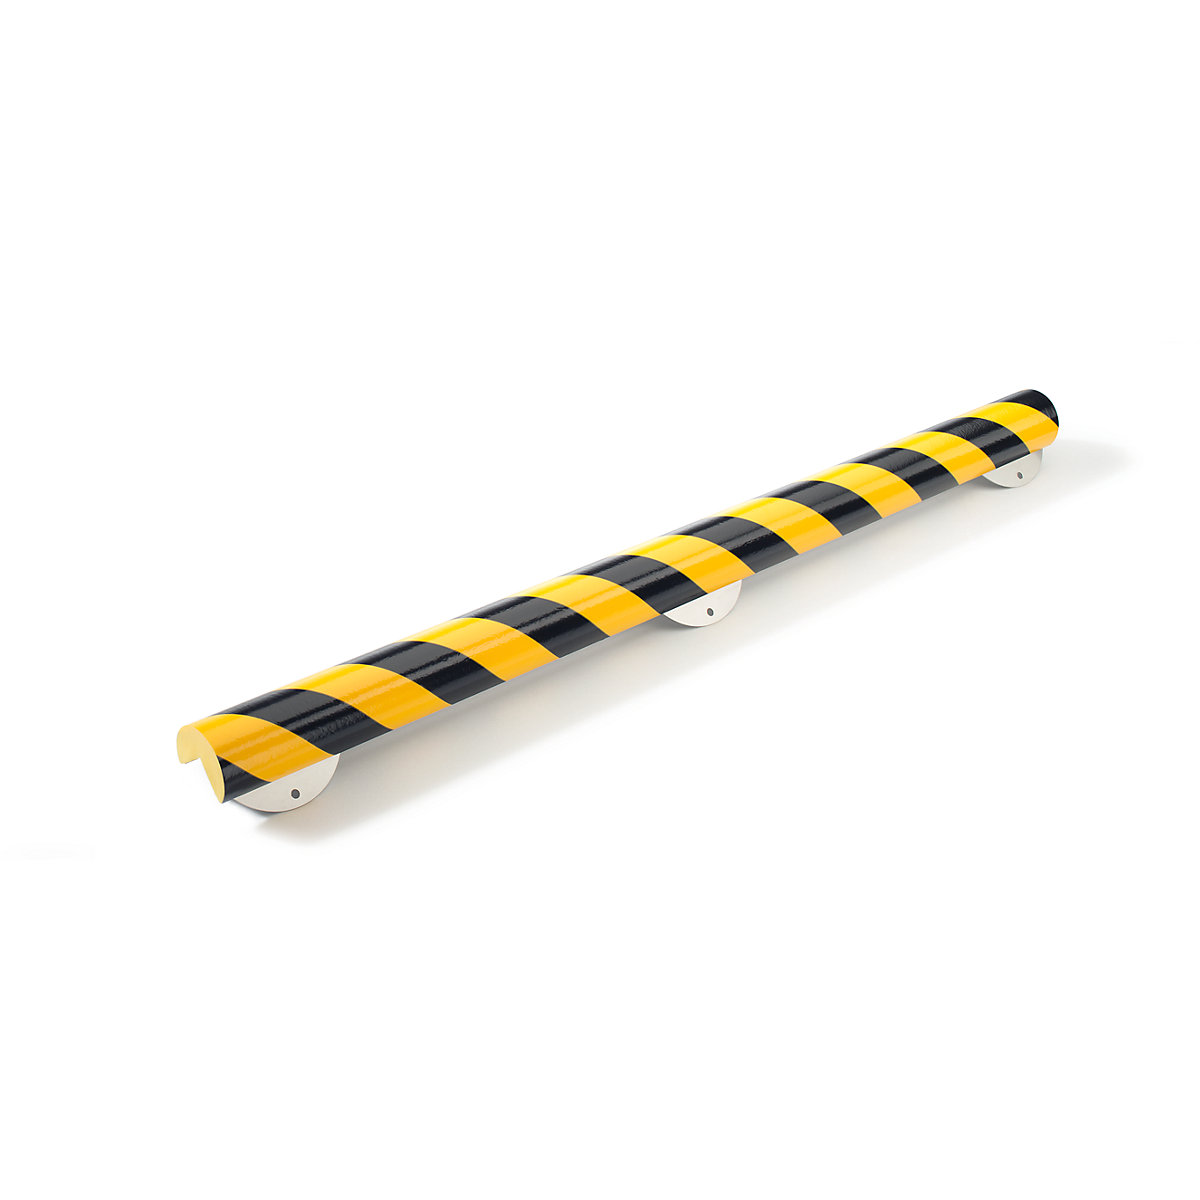 Protecție pentru colț Knuffi® cu șină de montaj – SHG, tip A+, bucată de 1 m, negru / galben